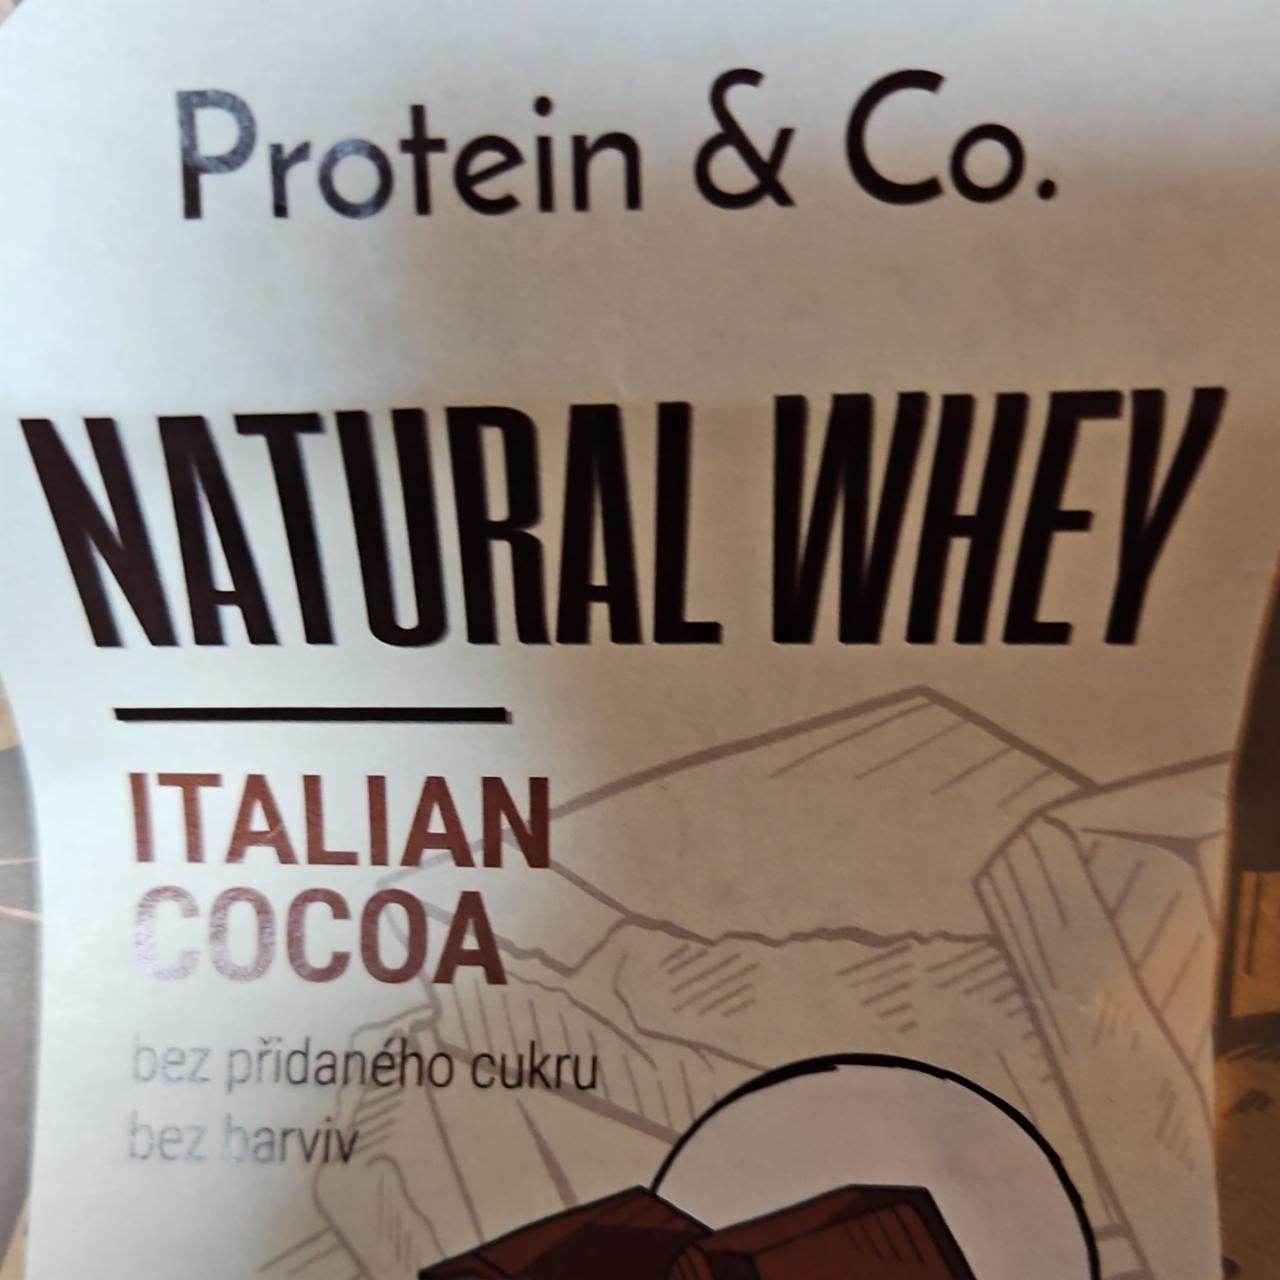 Fotografie - Natural Whey Italian Cocoa Protein & Co.